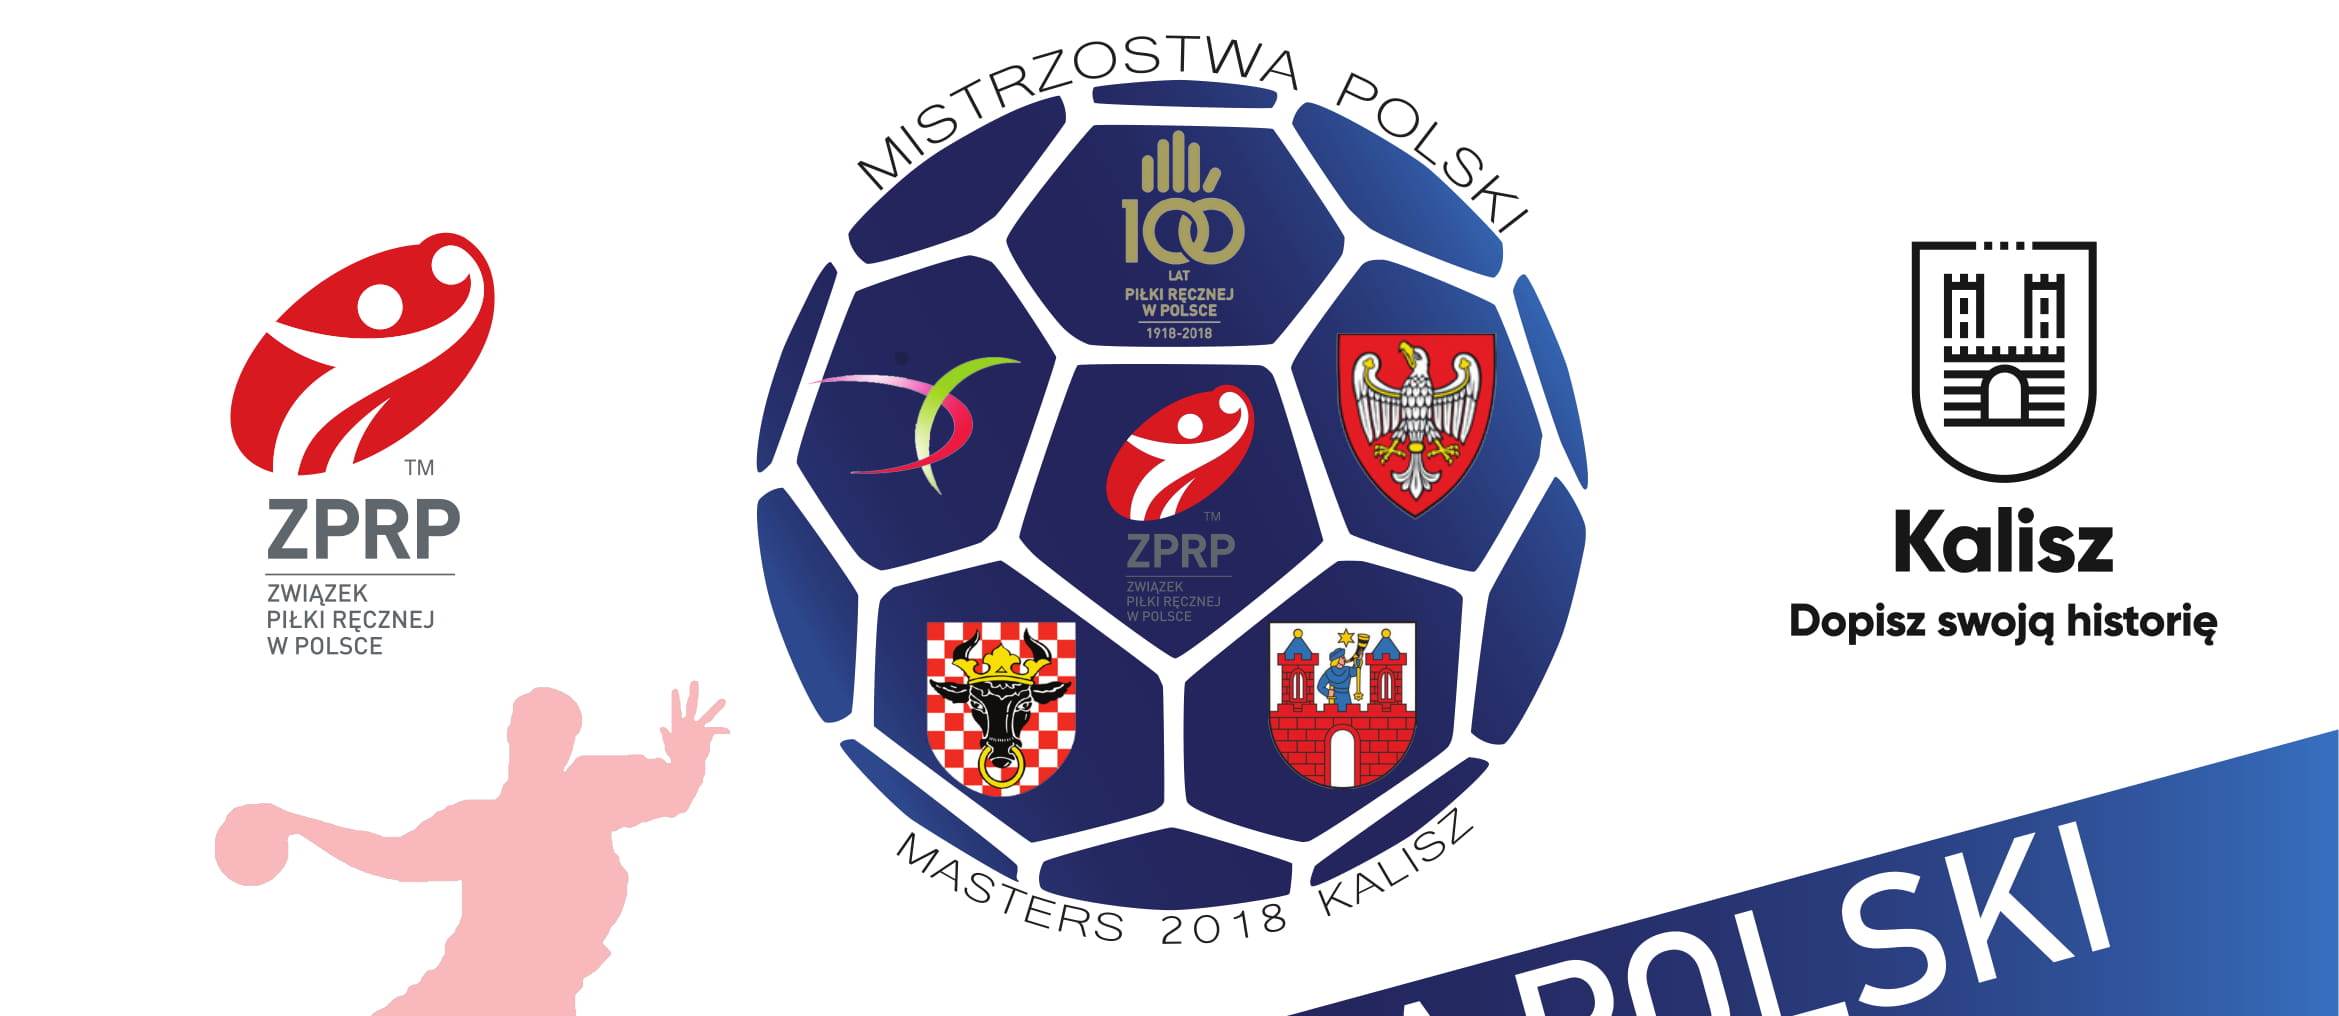 Kalisz zaprasza na Mistrzostwa Polski Masters 2018